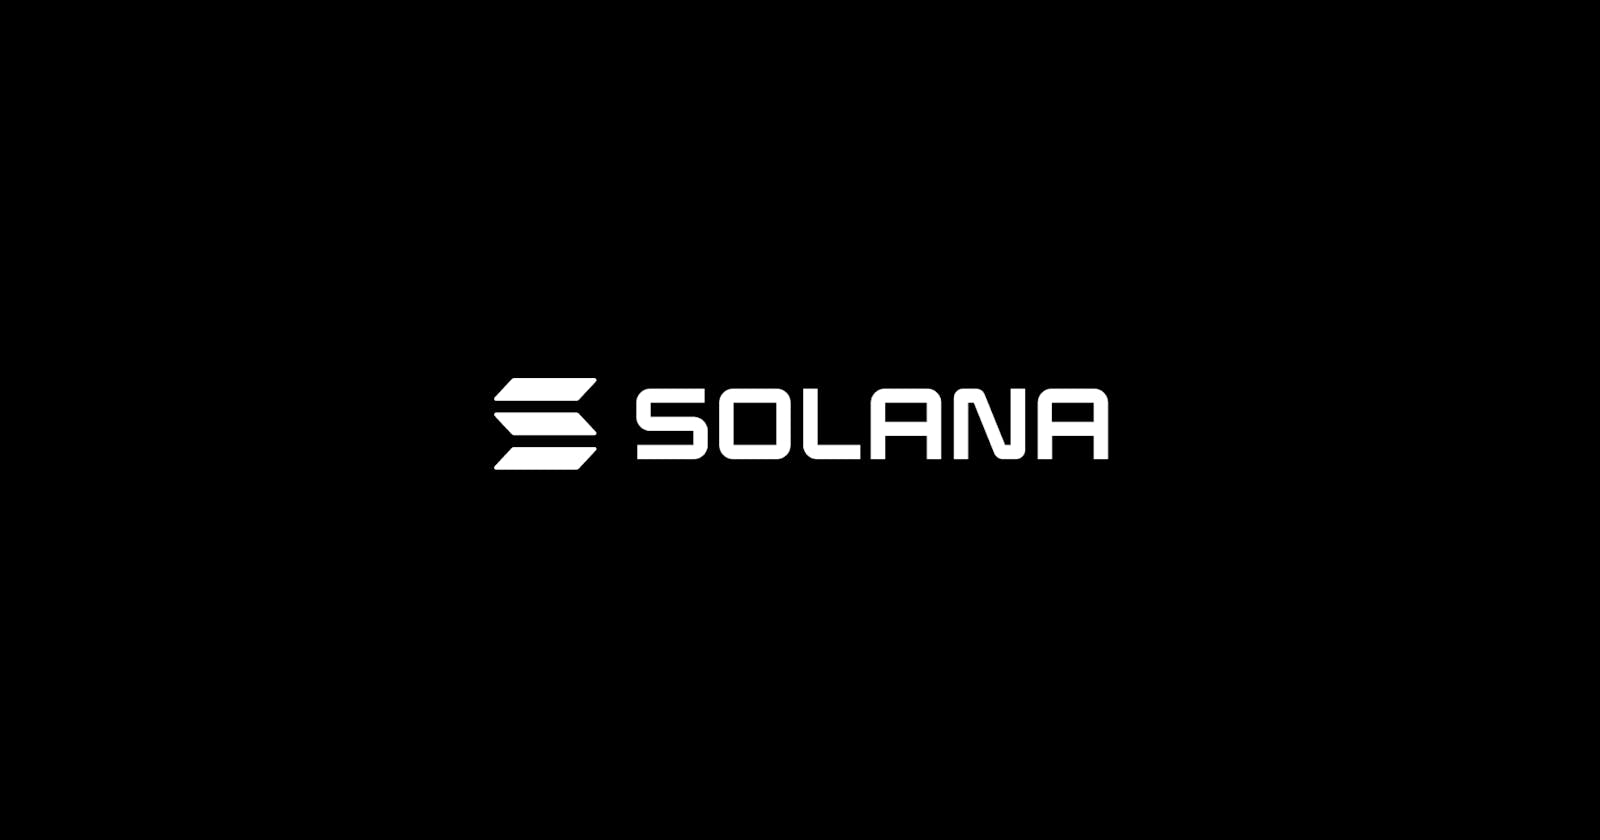 Why Solana?